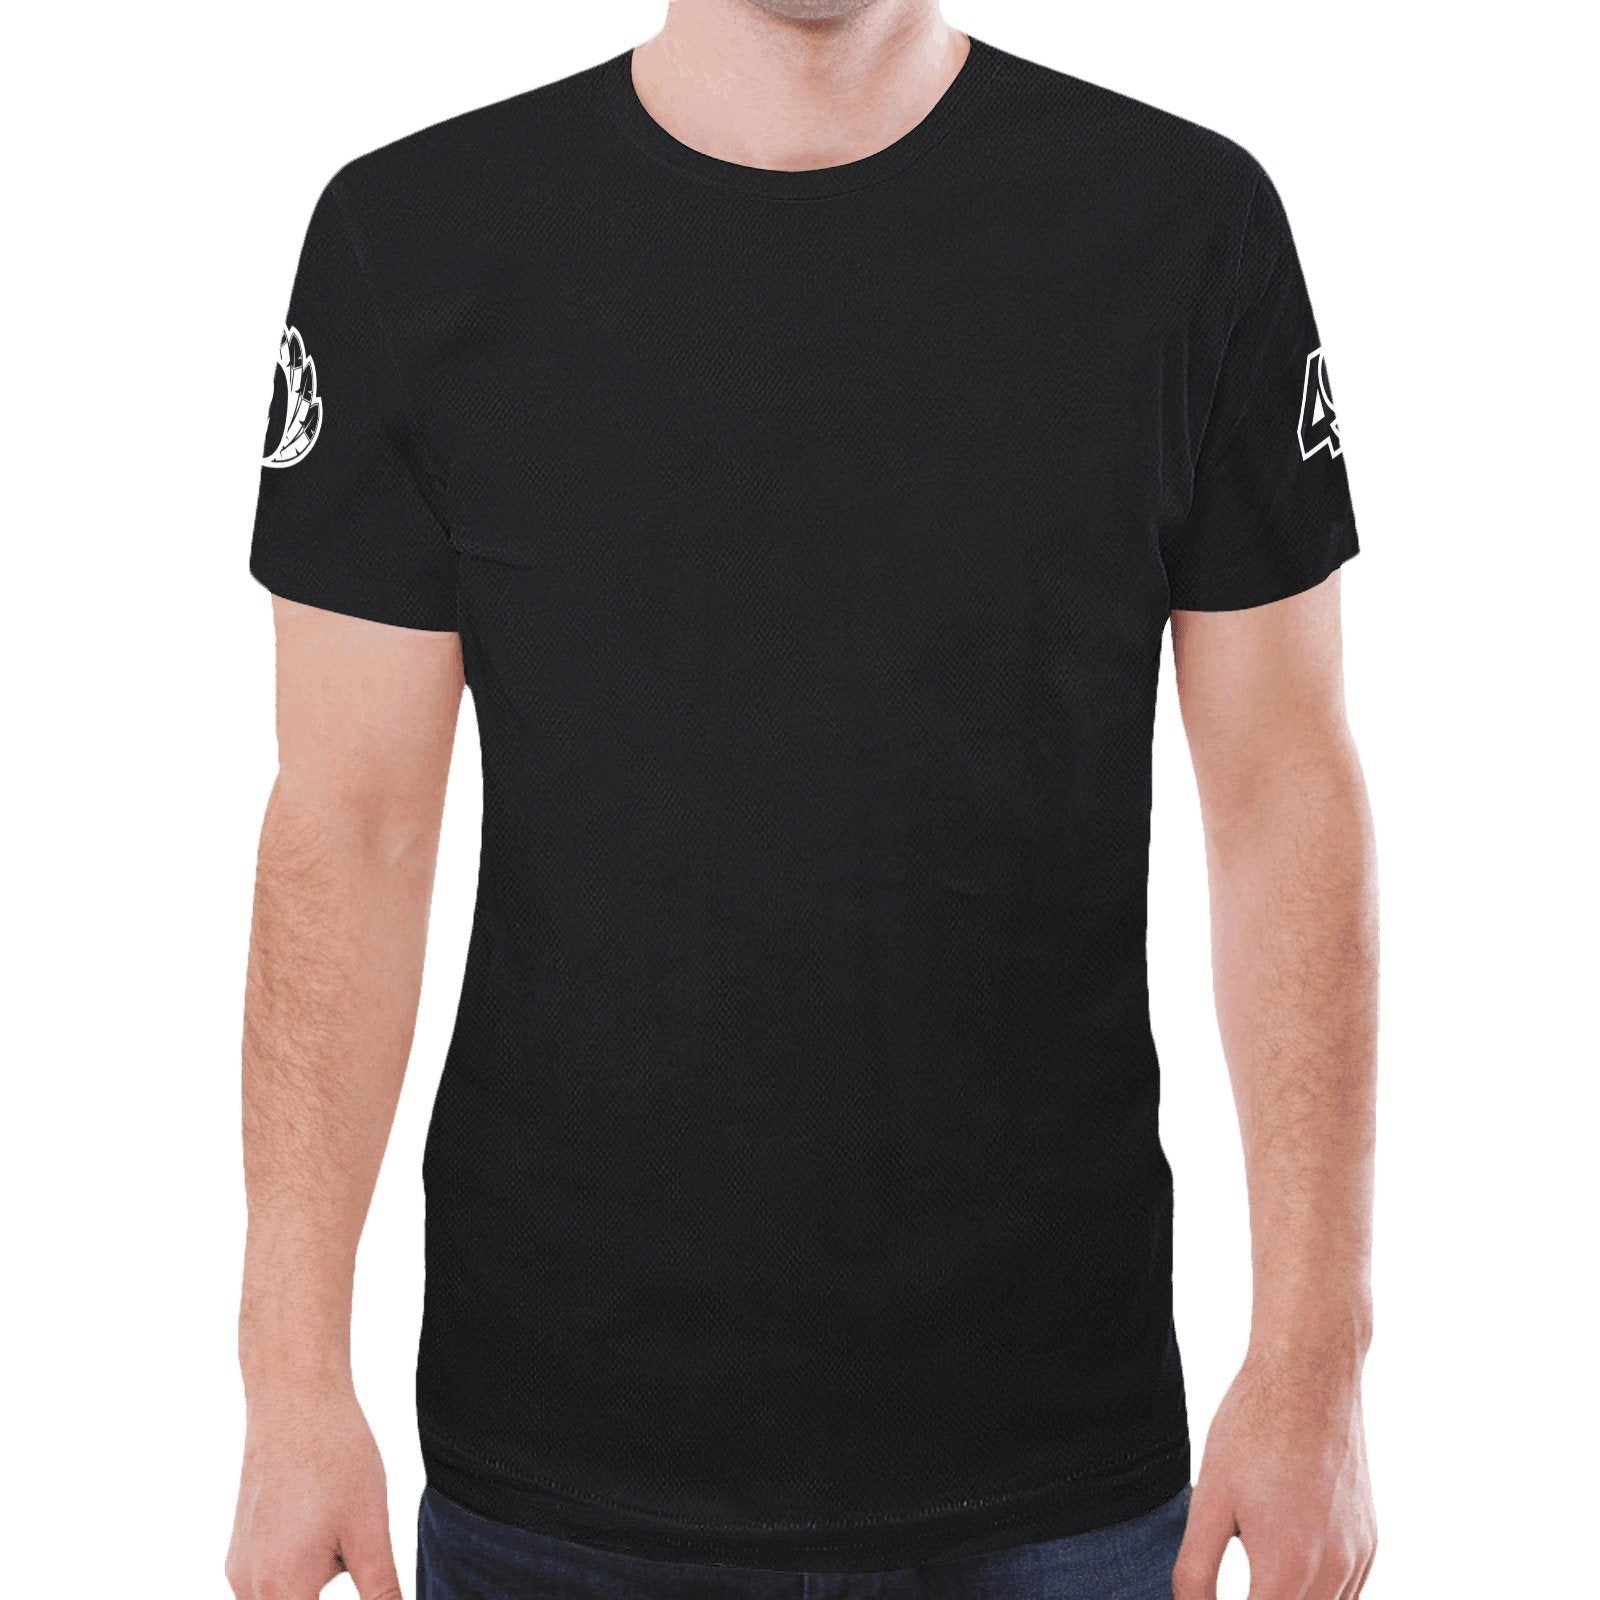 49 Dzine Logomark & Wordmark Shoulders Dress Code New All Over Print T-shirt for Men (Model T45) New All Over Print T-shirt for Men (T45) e-joyer 